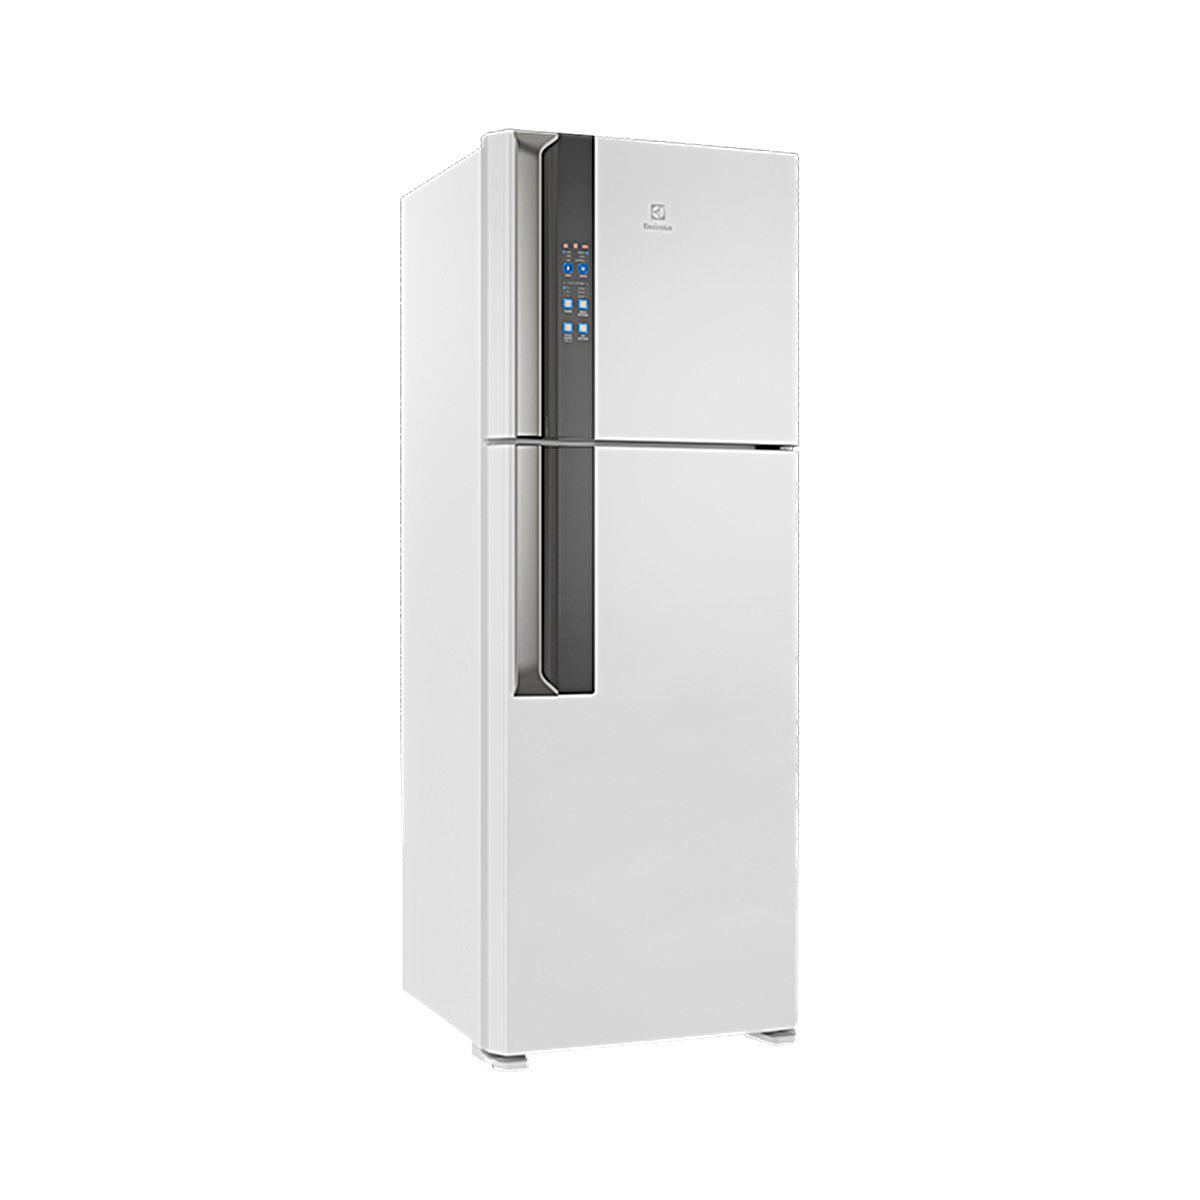 Menor preço em Geladeira Electrolux Automática Top Freezer 2 Portas DF56 474 Litros Branco 220V